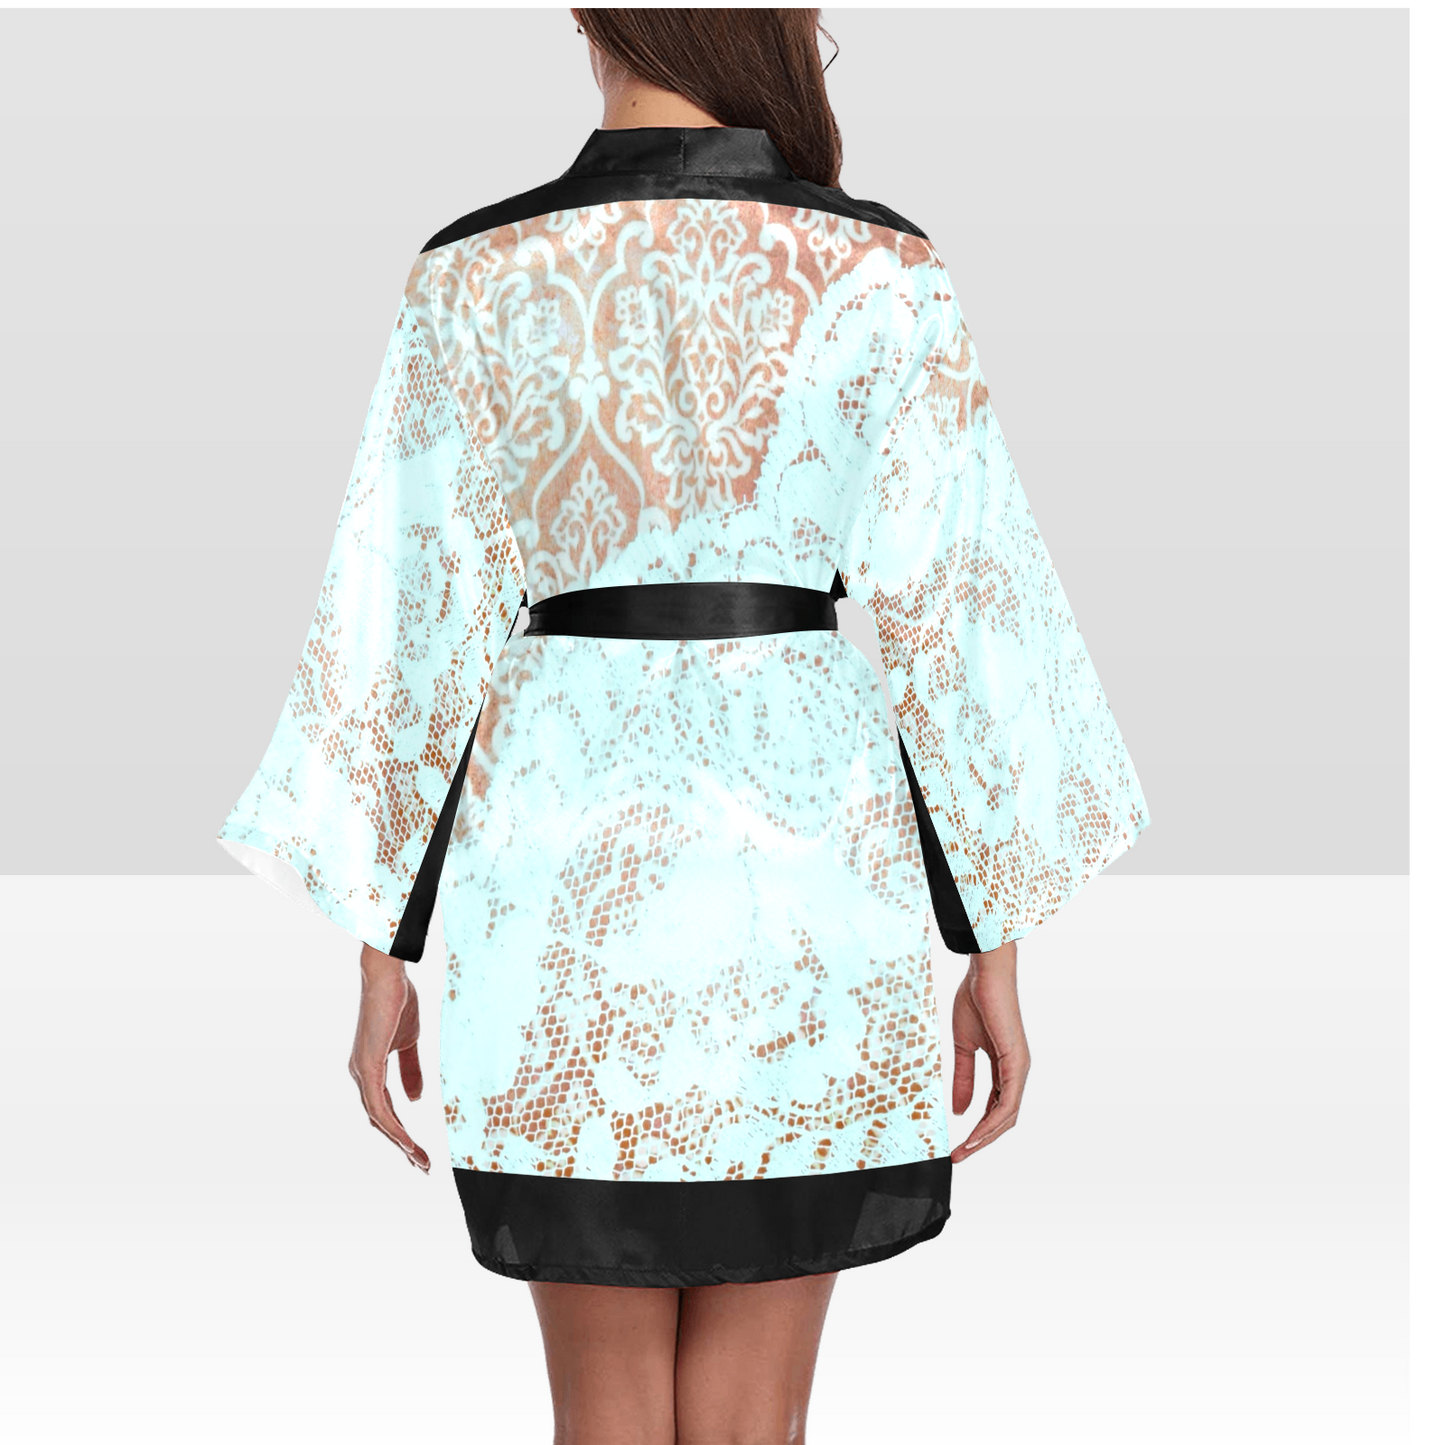 Victorian Lace Kimono Robe, Black or White Trim, Sizes XS to 2XL, Design 23